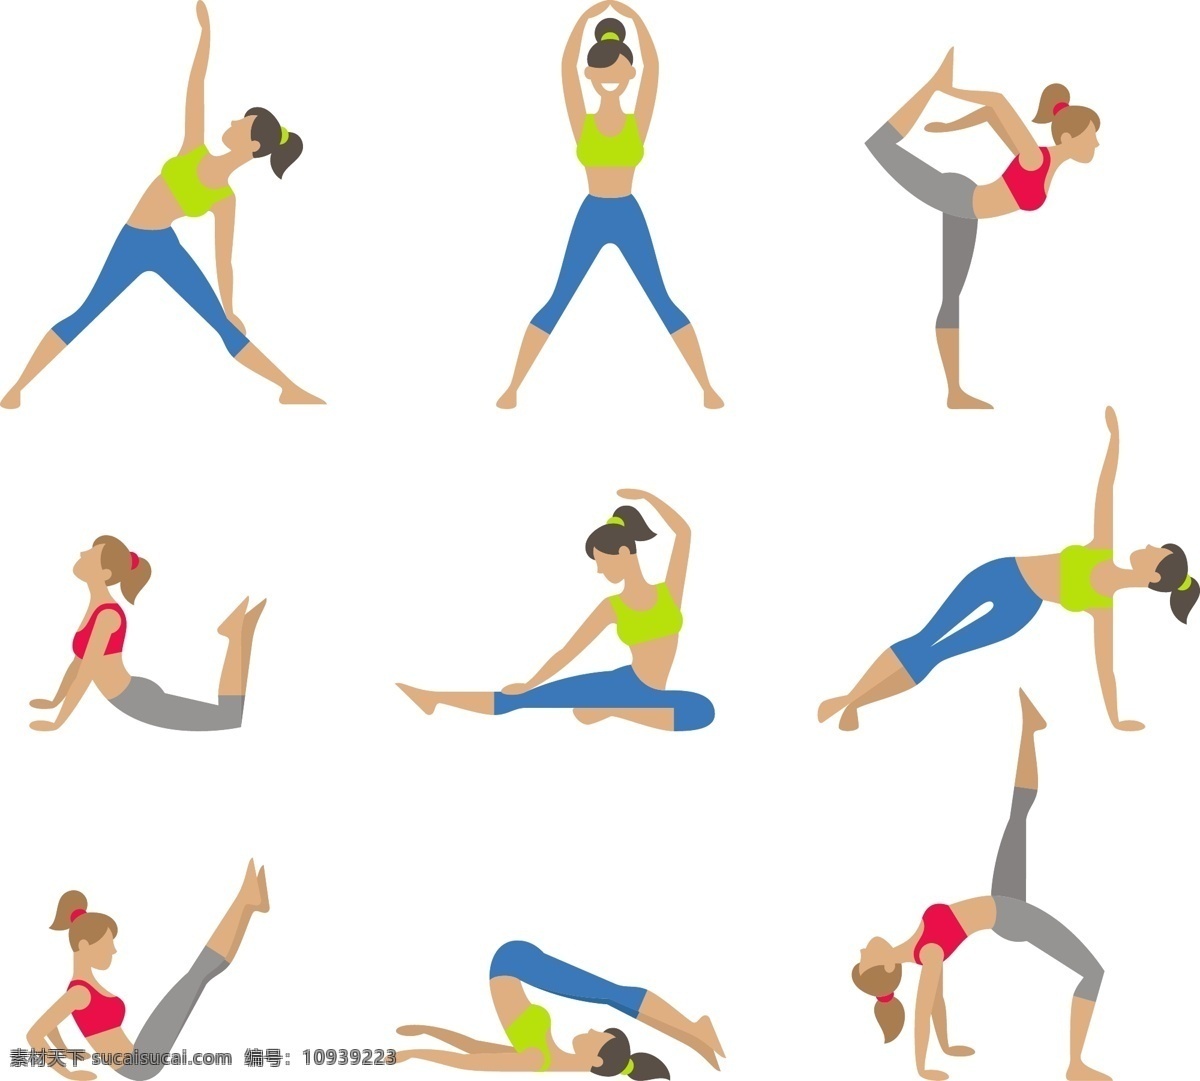 瑜伽女性动作 练瑜伽的女性 动作矢量素材 瑜伽 健身的女孩 练瑜伽的女孩 卡通美女 瑜伽教程 瑜伽动作 体育运动 eps格式